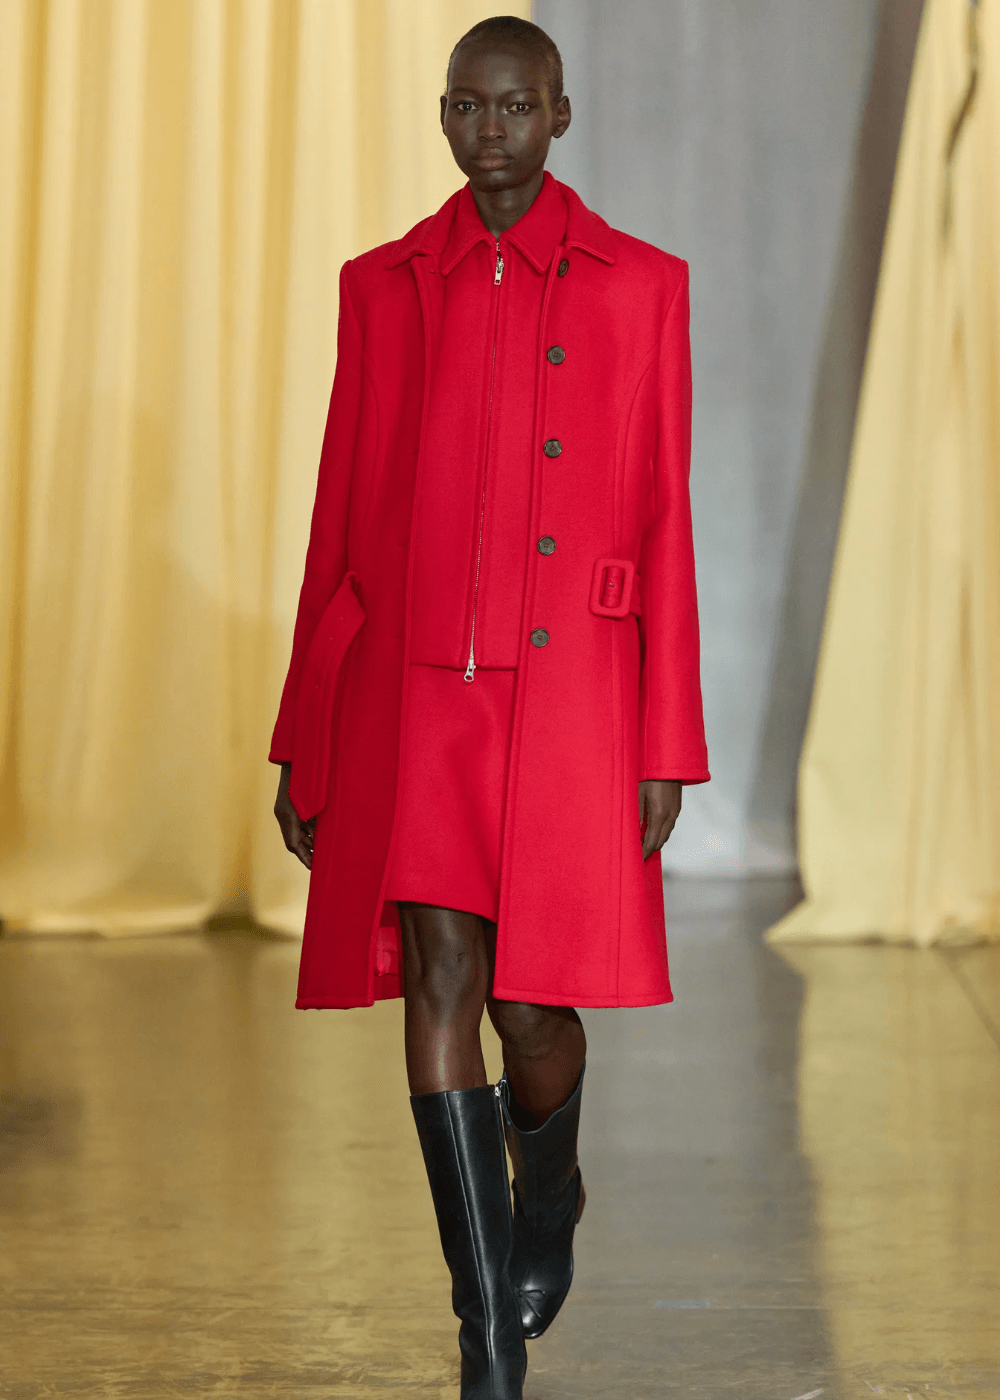 Sandy Liang - conjunto de alfaiataria vermelho - looks estilosos - inverno - modelo negra desfilando na passarela - https://stealthelook.com.br